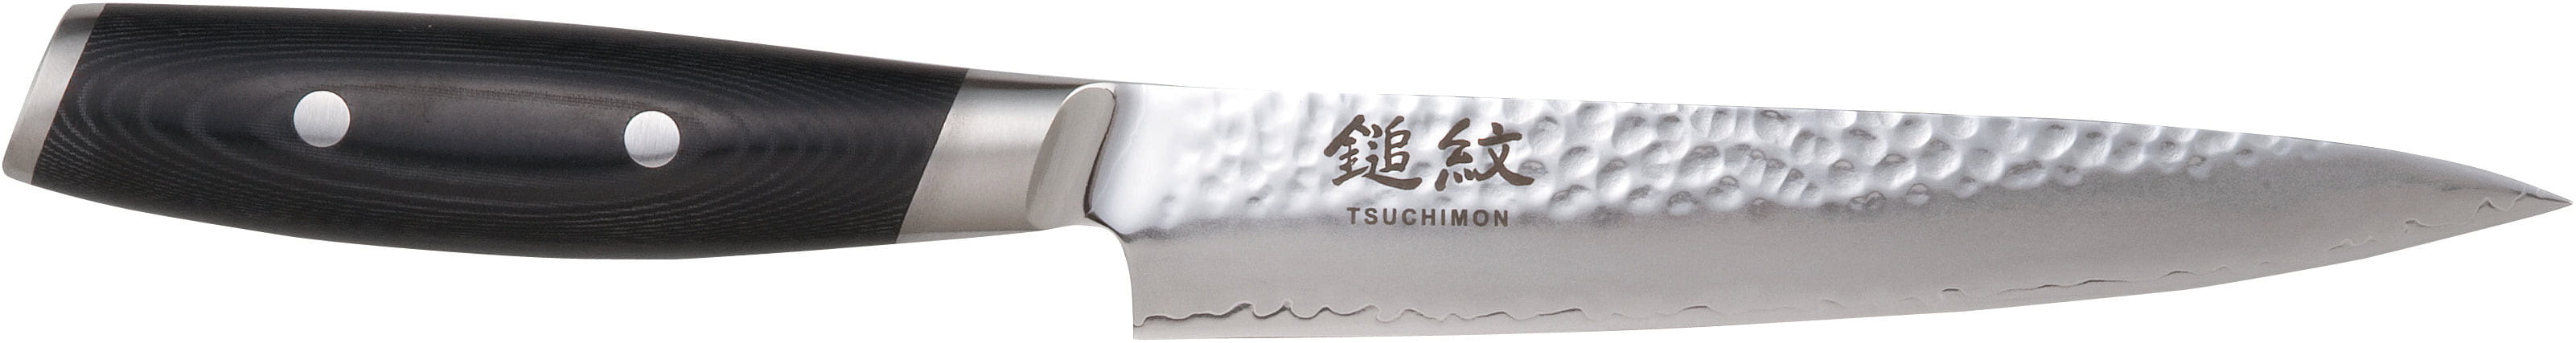 Cuchillo de talla de yaxell tsuchimon, 18 cm